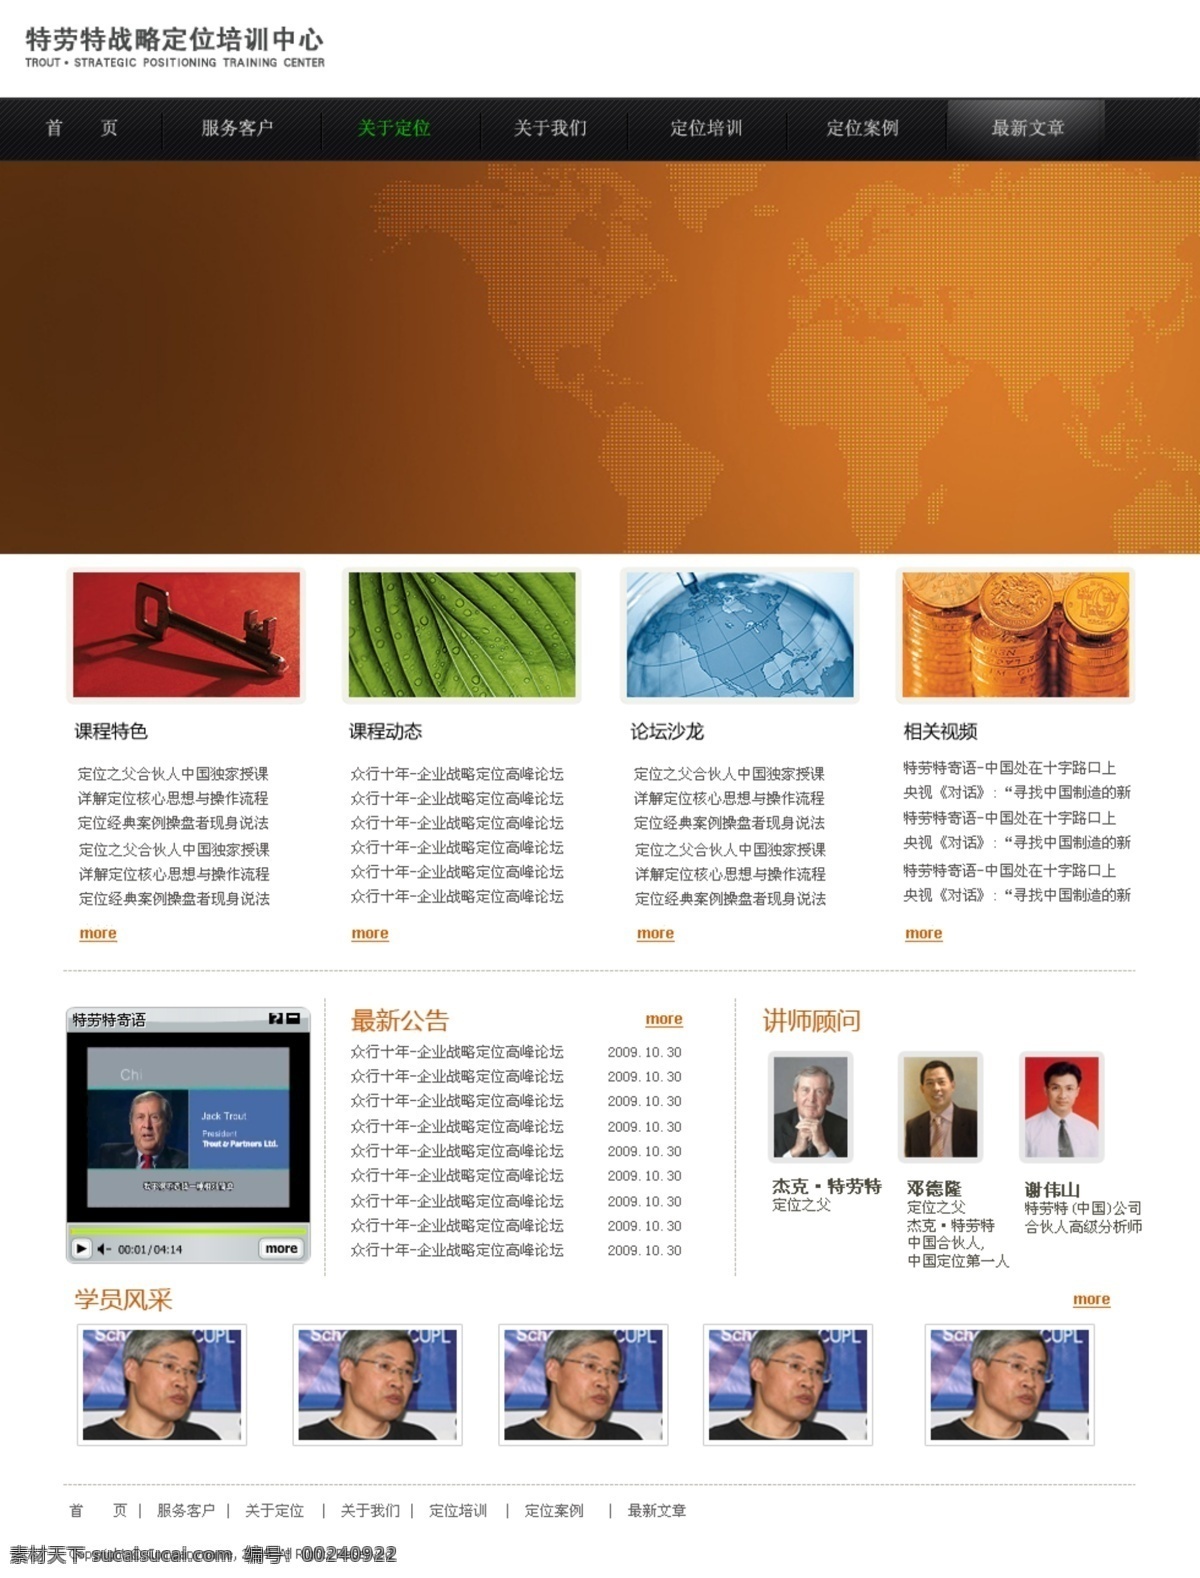 培训 类 网页 首页 模版 网页模板 效果图 源文件 中文模版 培训类网站 网页素材